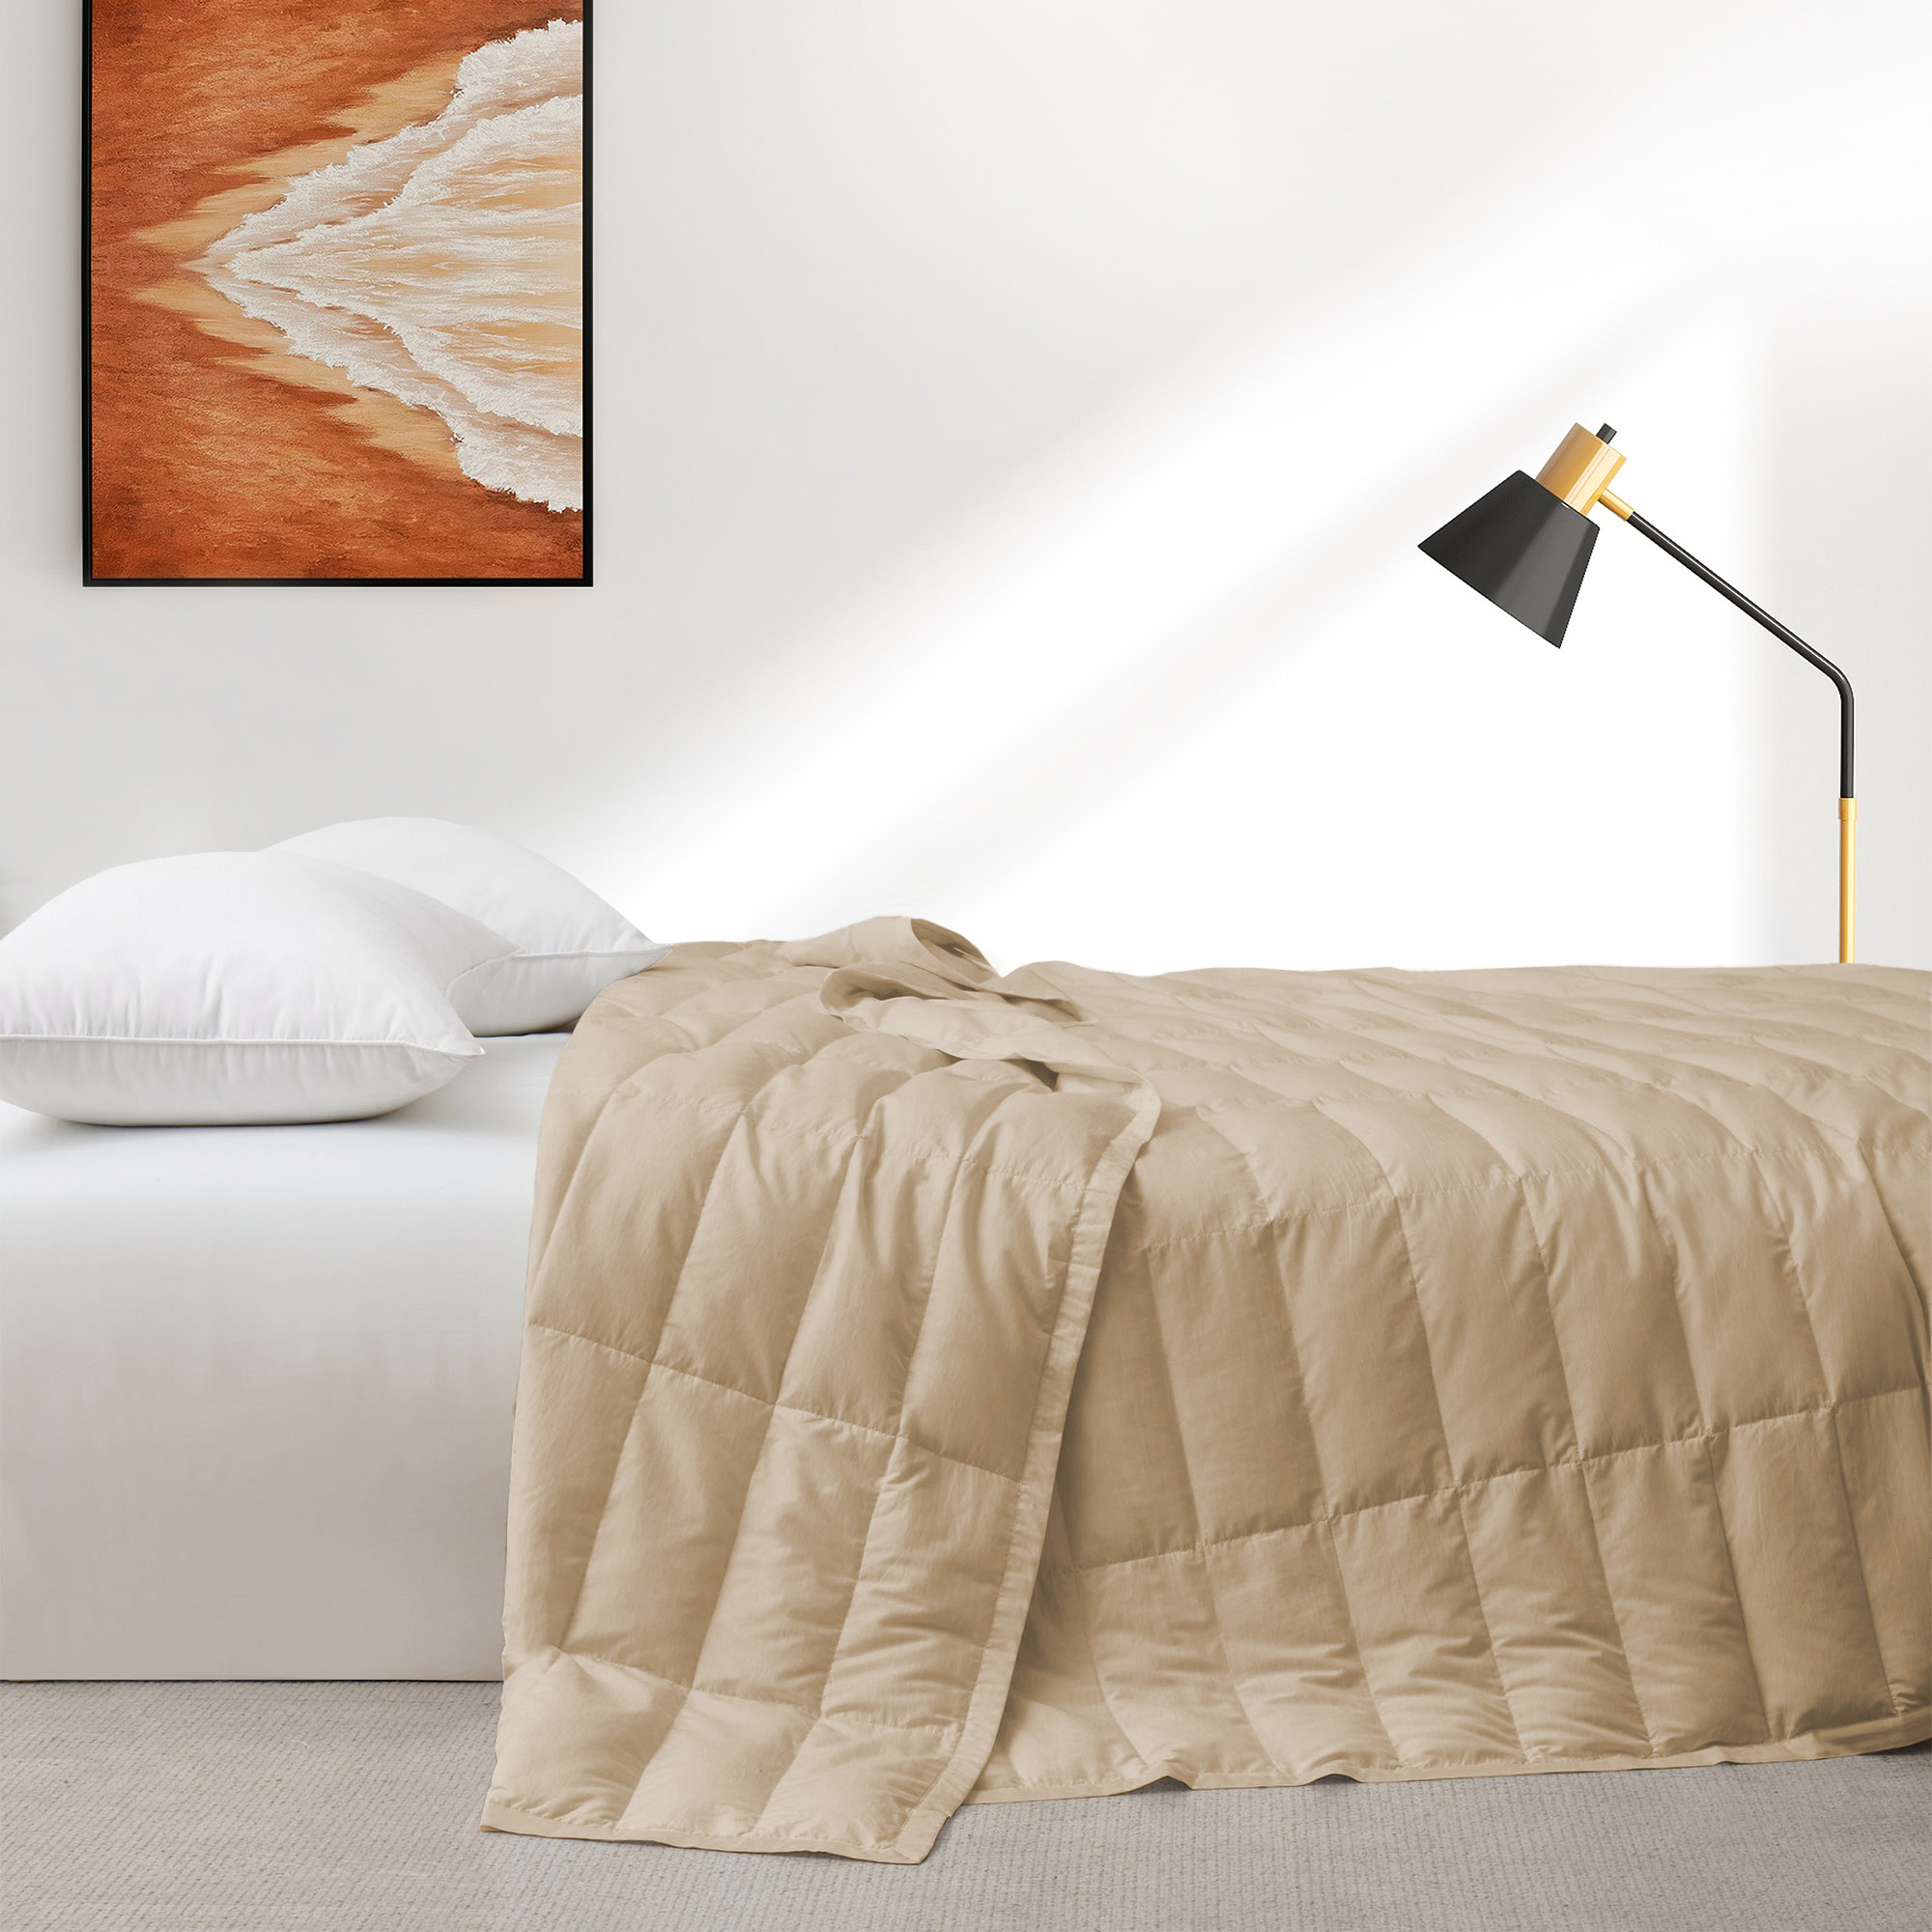 TENCELâ¢ Lyocell Lightweight Cooling Down Blanket-Luxurious Comfort Summer Blanket - Ginger Root, Full/Queen